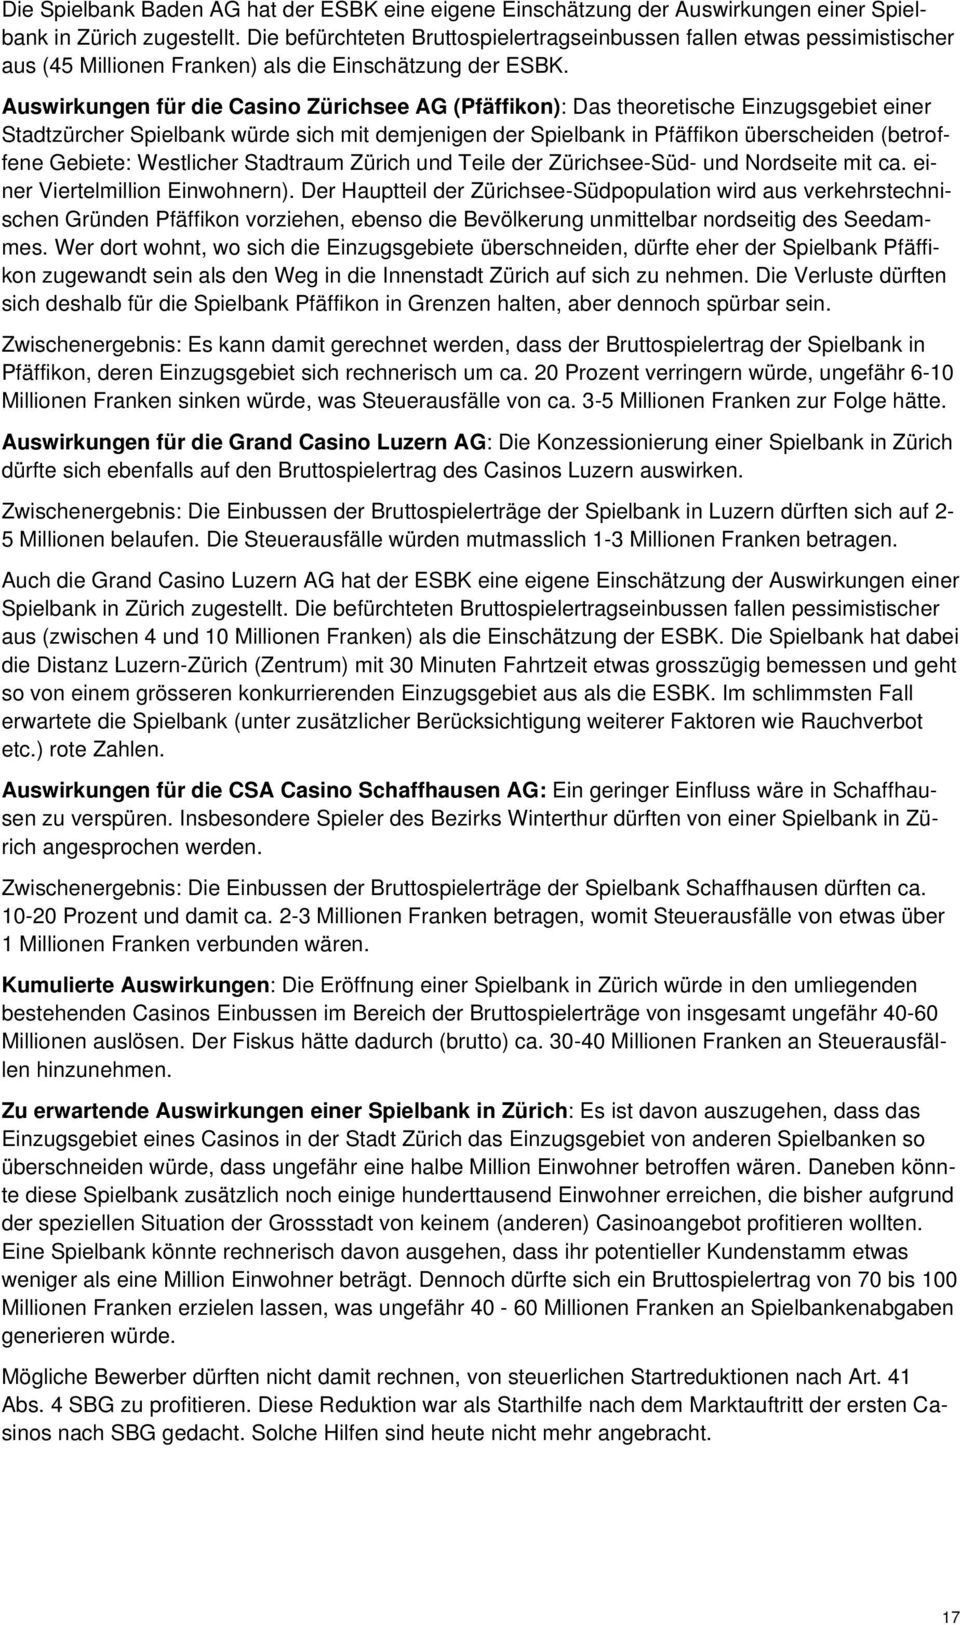 Auswirkungen für die Casino Zürichsee AG (Pfäffikon): Das theoretische Einzugsgebiet einer Stadtzürcher Spielbank würde sich mit demjenigen der Spielbank in Pfäffikon überscheiden (betroffene